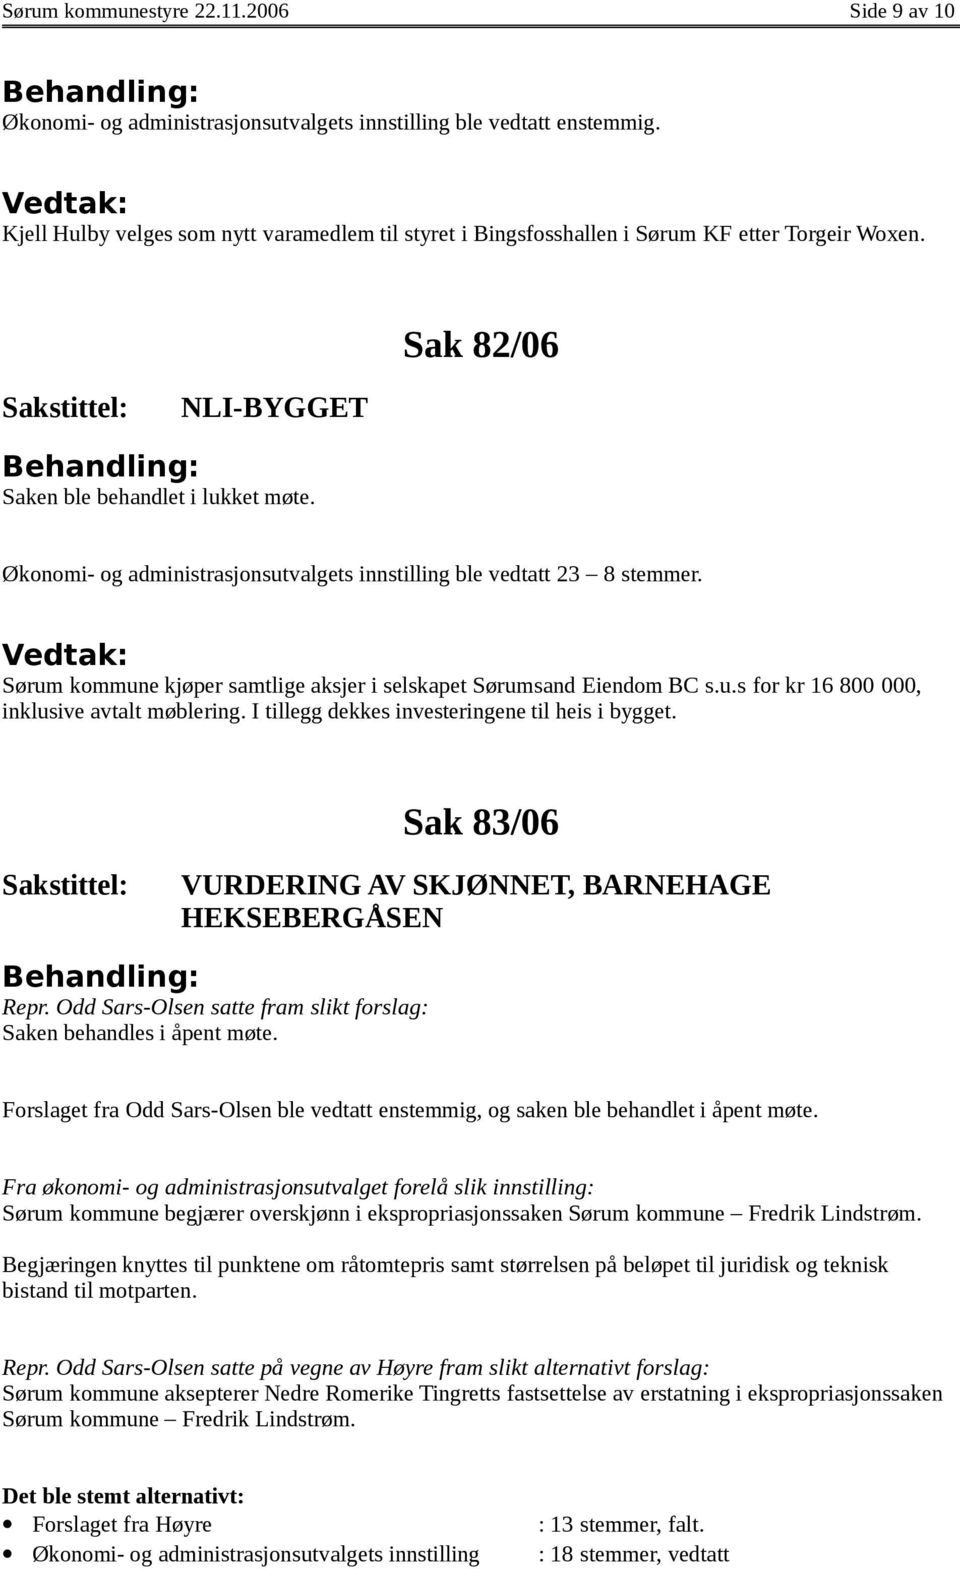 Økonomi- og administrasjonsutvalgets innstilling ble vedtatt 23 8 stemmer. Sørum kommune kjøper samtlige aksjer i selskapet Sørumsand Eiendom BC s.u.s for kr 16 800 000, inklusive avtalt møblering.